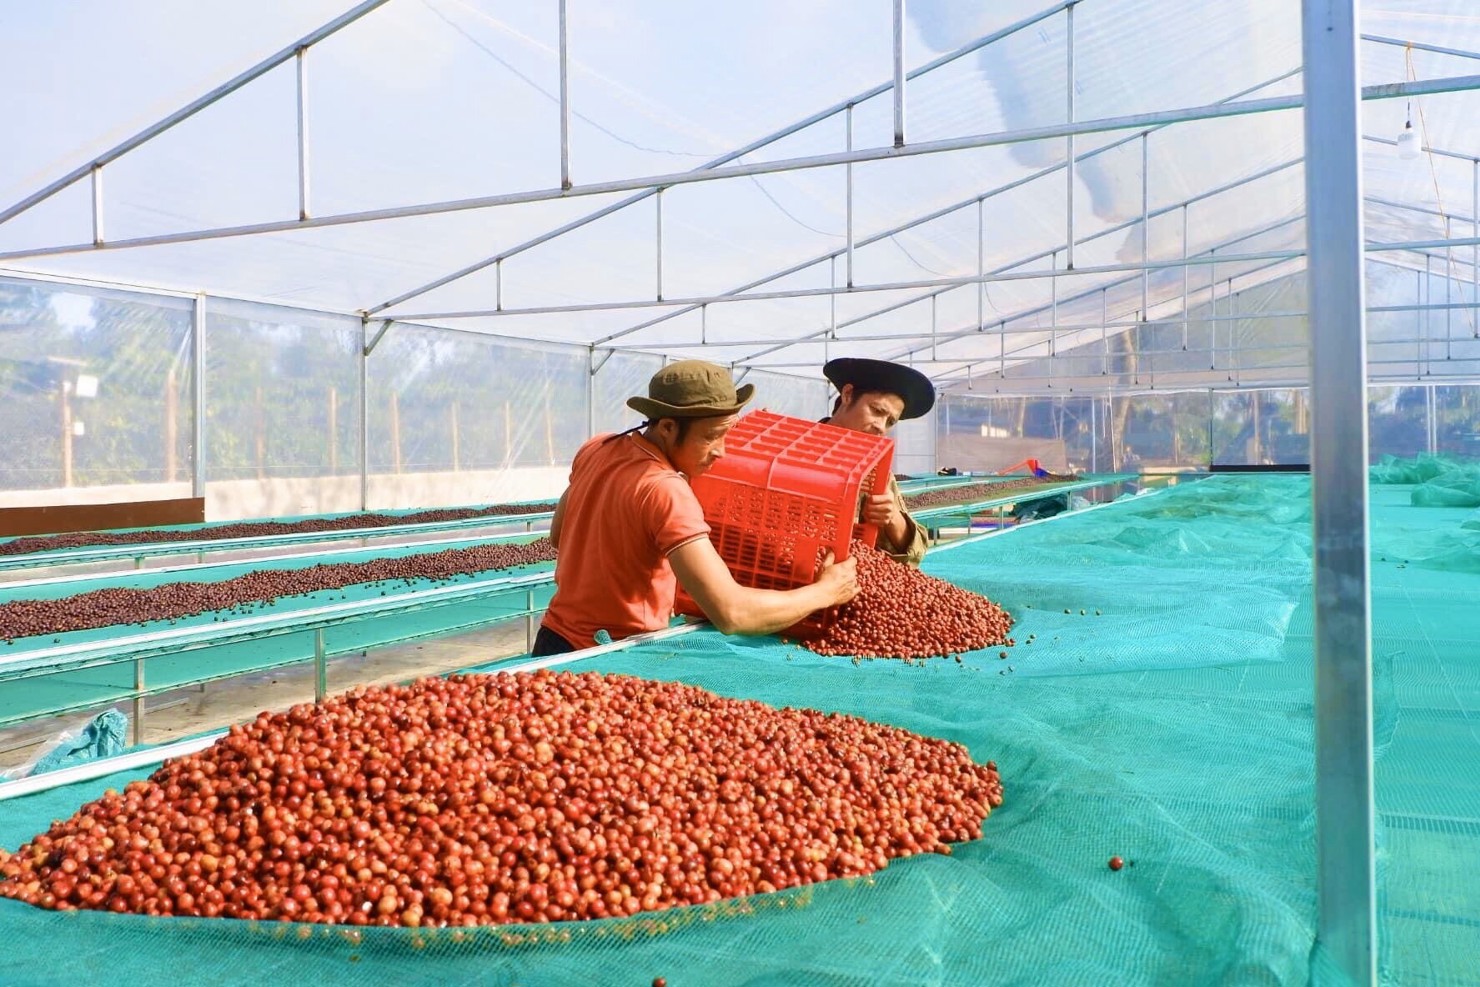 Cà phê thu hái 100% quả chín được Hợp tác xã Ea Tân (huyện Krông Năng) phơi trong nhà lồng sau khi sơ chế. Ảnh: Thảo Huyền